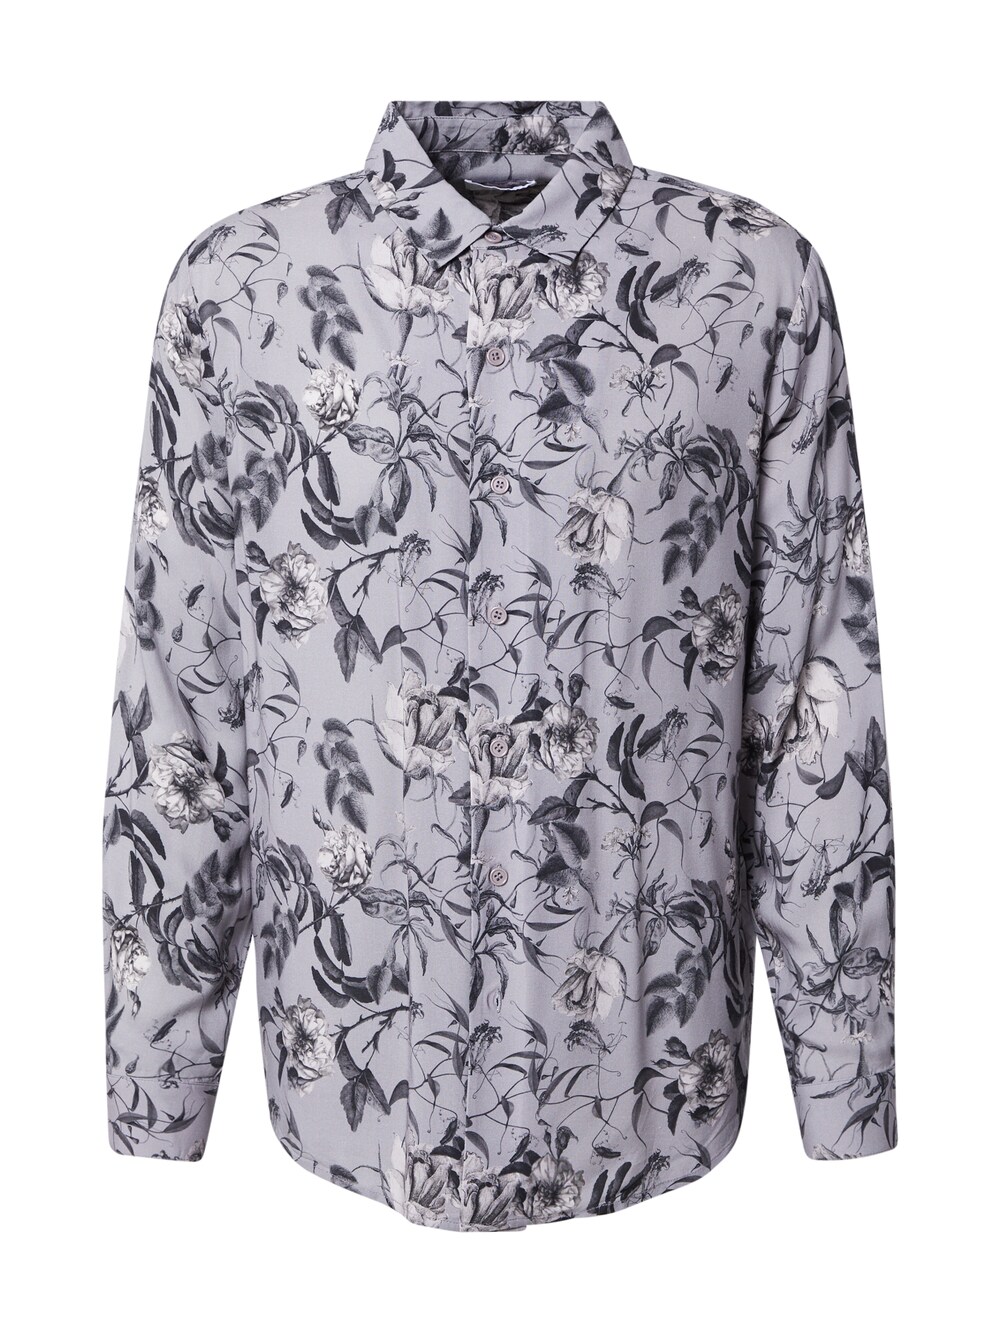 Рубашка на пуговицах стандартного кроя DAN FOX APPAREL Francesco, серый/темно-серый